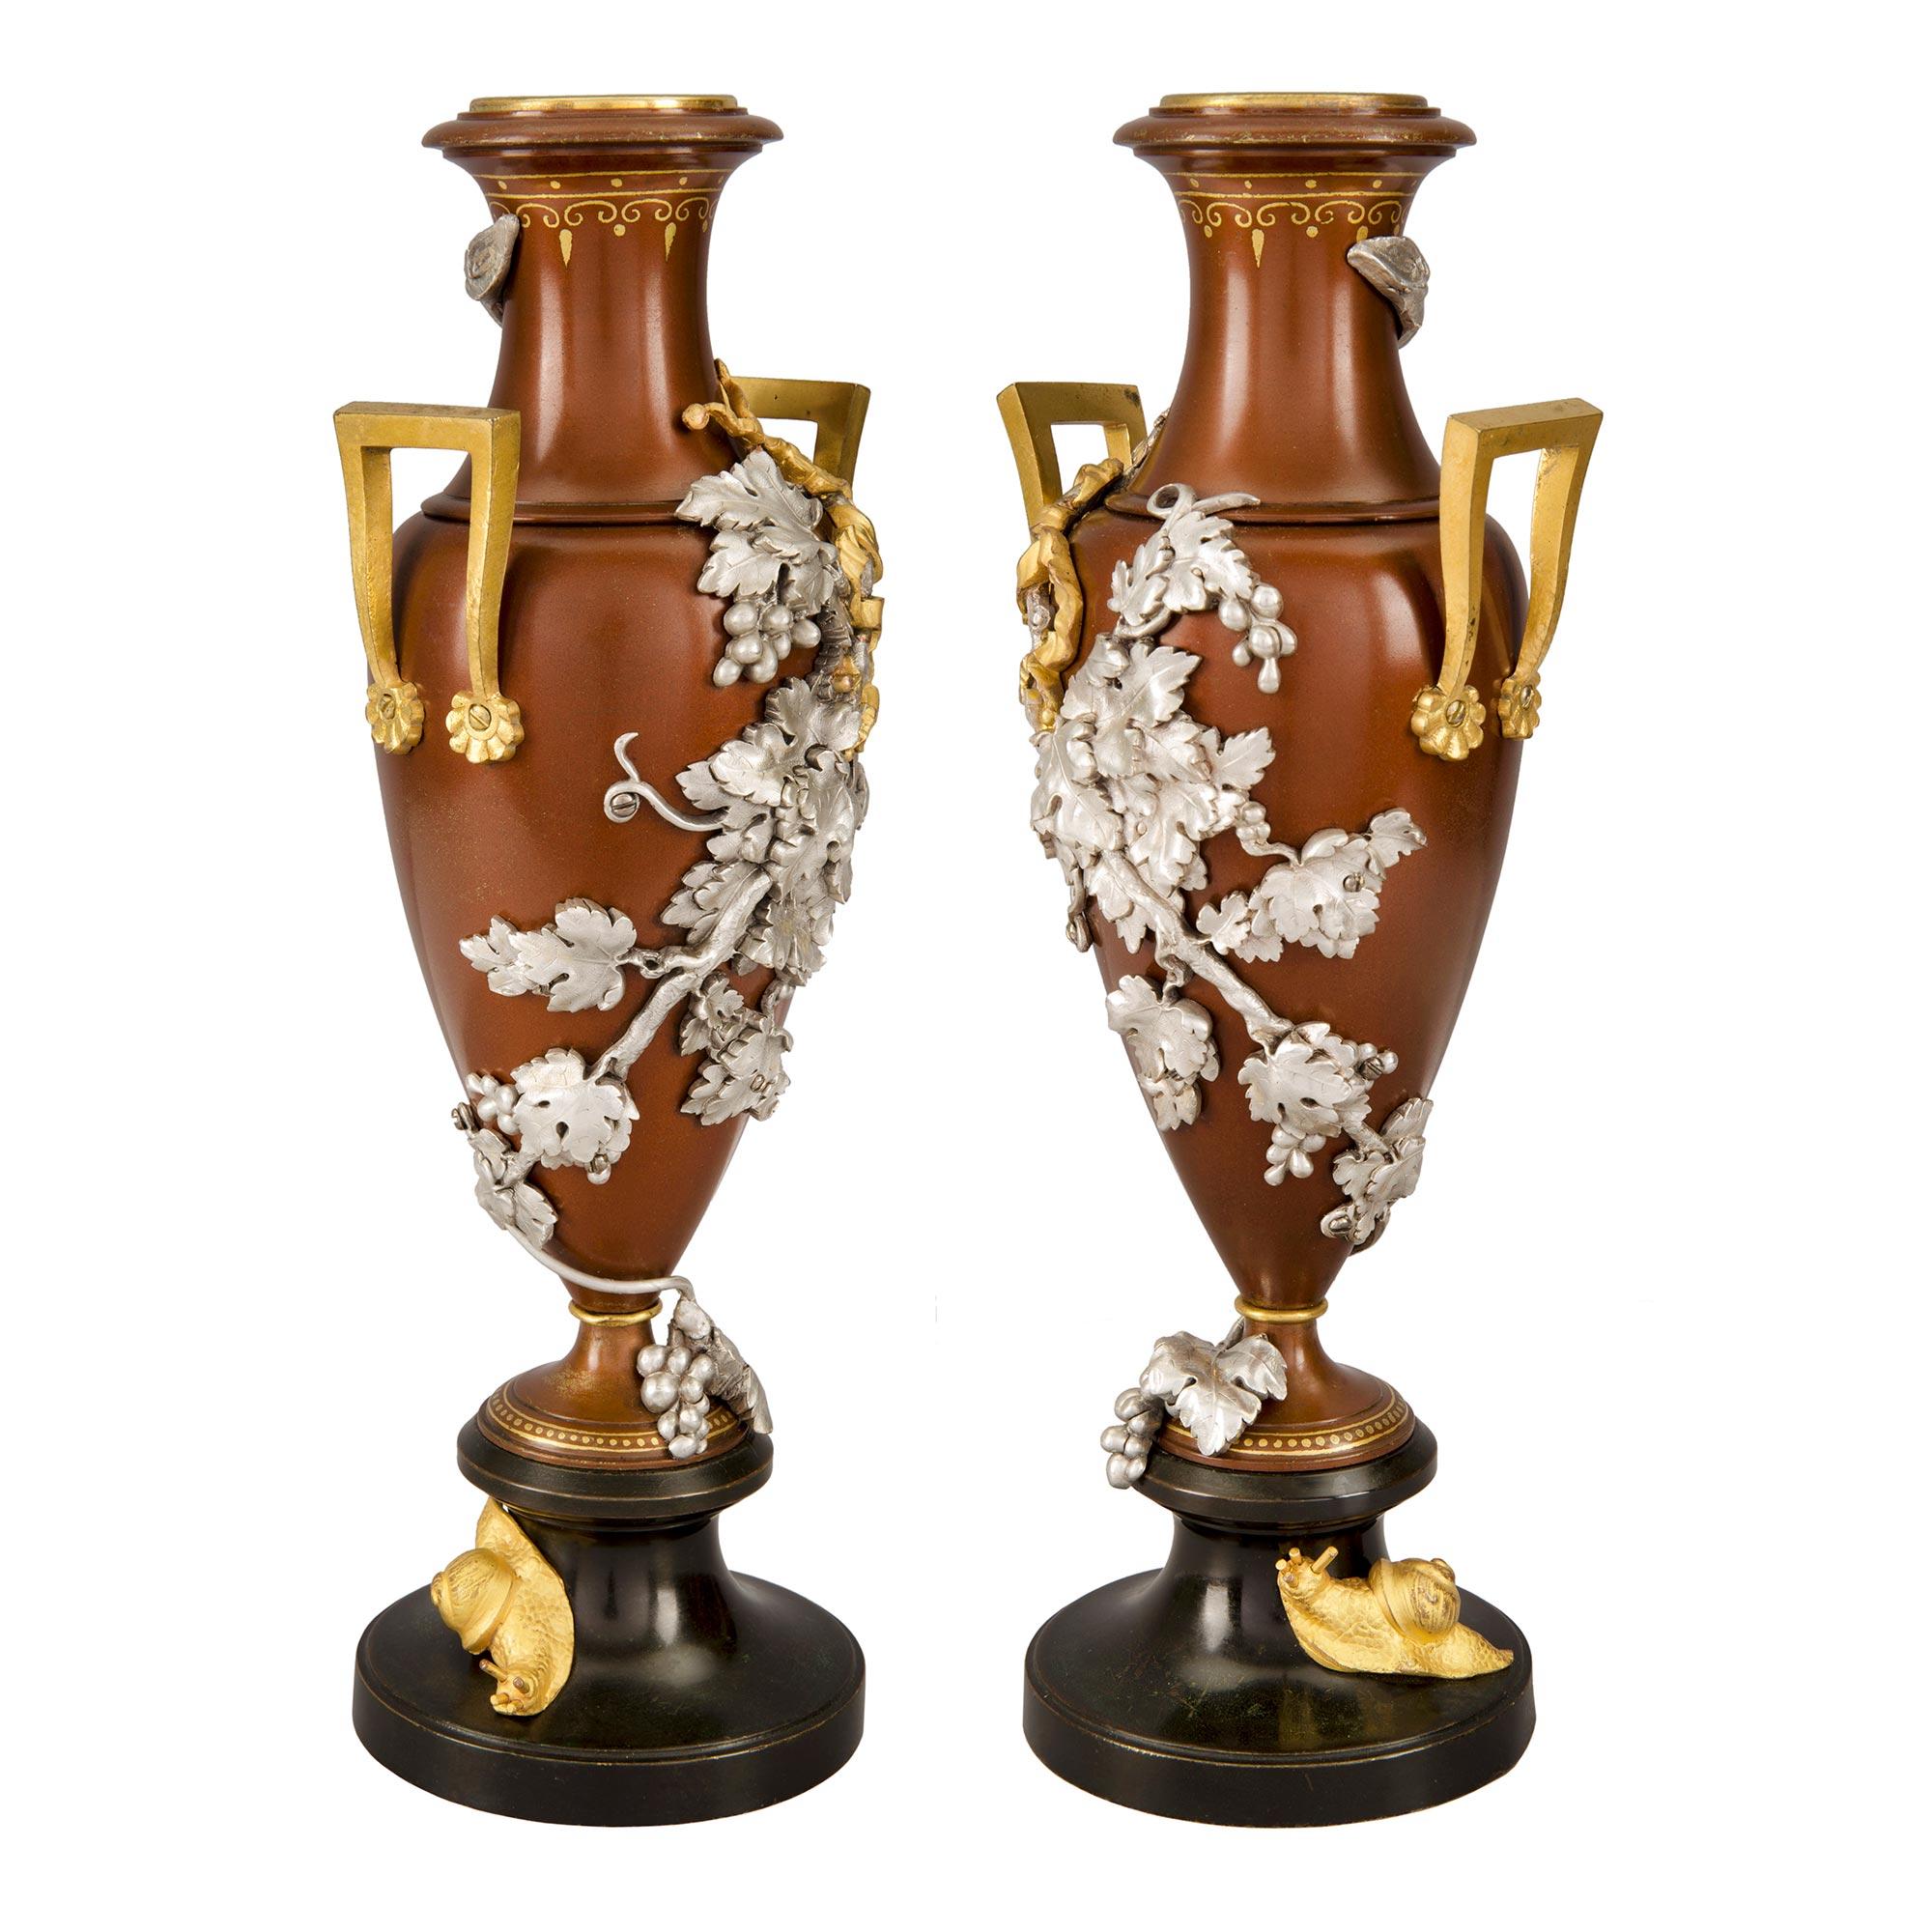 Ein atemberaubendes Paar französischer Urnen aus dem 19. Jahrhundert aus versilberter Bronze, Ormolu und zweifarbig patinierter Bronze. Jede schöne Urne steht auf einem Sockel aus patinierter Bronze mit einer charmanten, reich ziselierten Schnecke